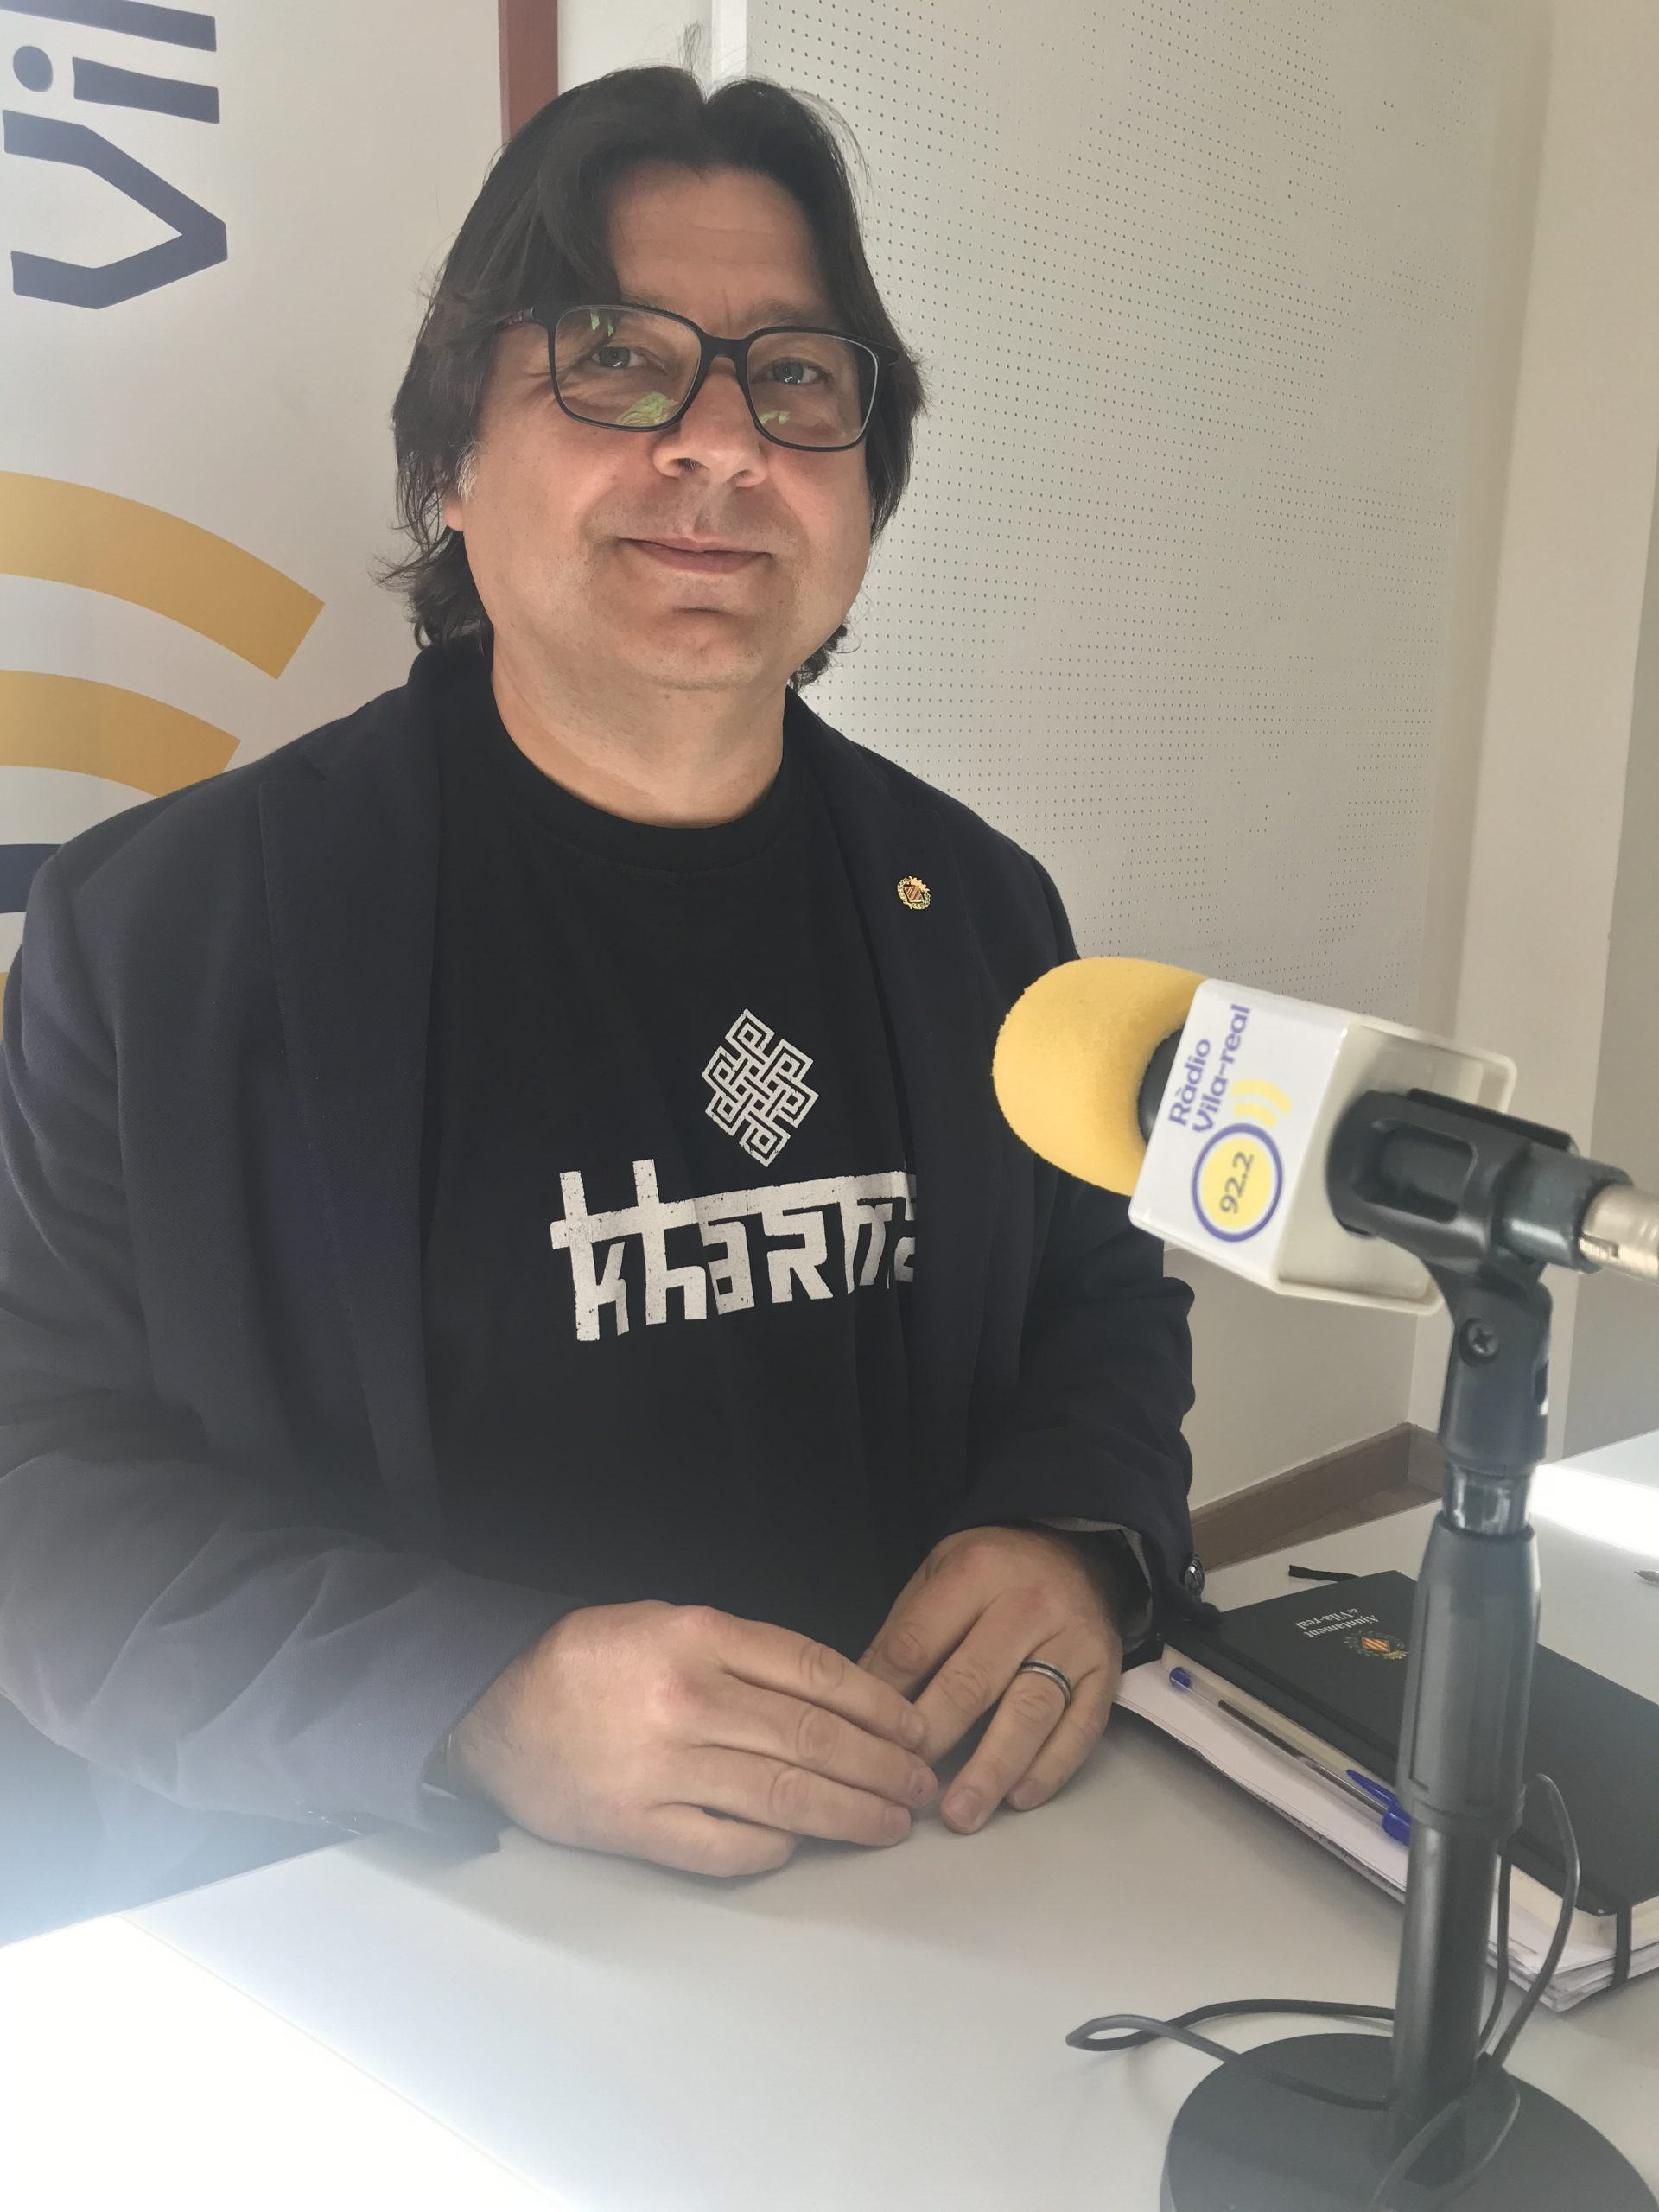 Entrevista al regidor i portaveu de UP a Vila-real, José Ramón Ventura Chalmeta